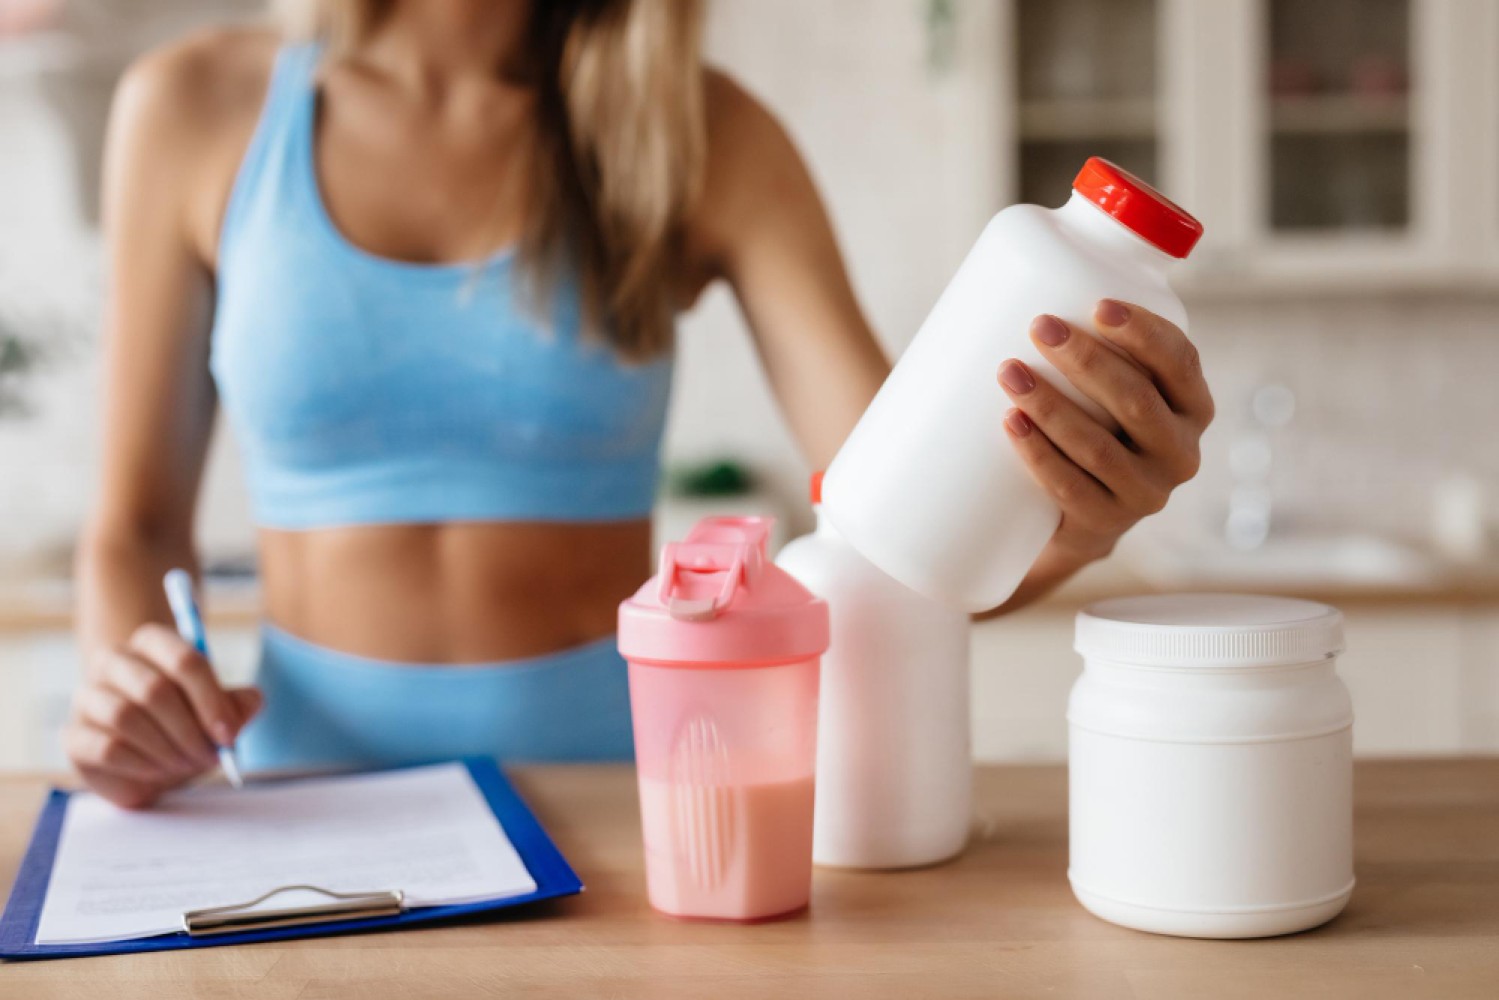 Диетические и функциональные молочные продукты становятся все более популярными среди тех, кто следит за своим здоровьем и стремится к правильному питанию. Эти продукты могут иметь множество полезных свойств, таких как улучшение пищеварения, снижение уровня холестерина и регулирование кровяного давления.